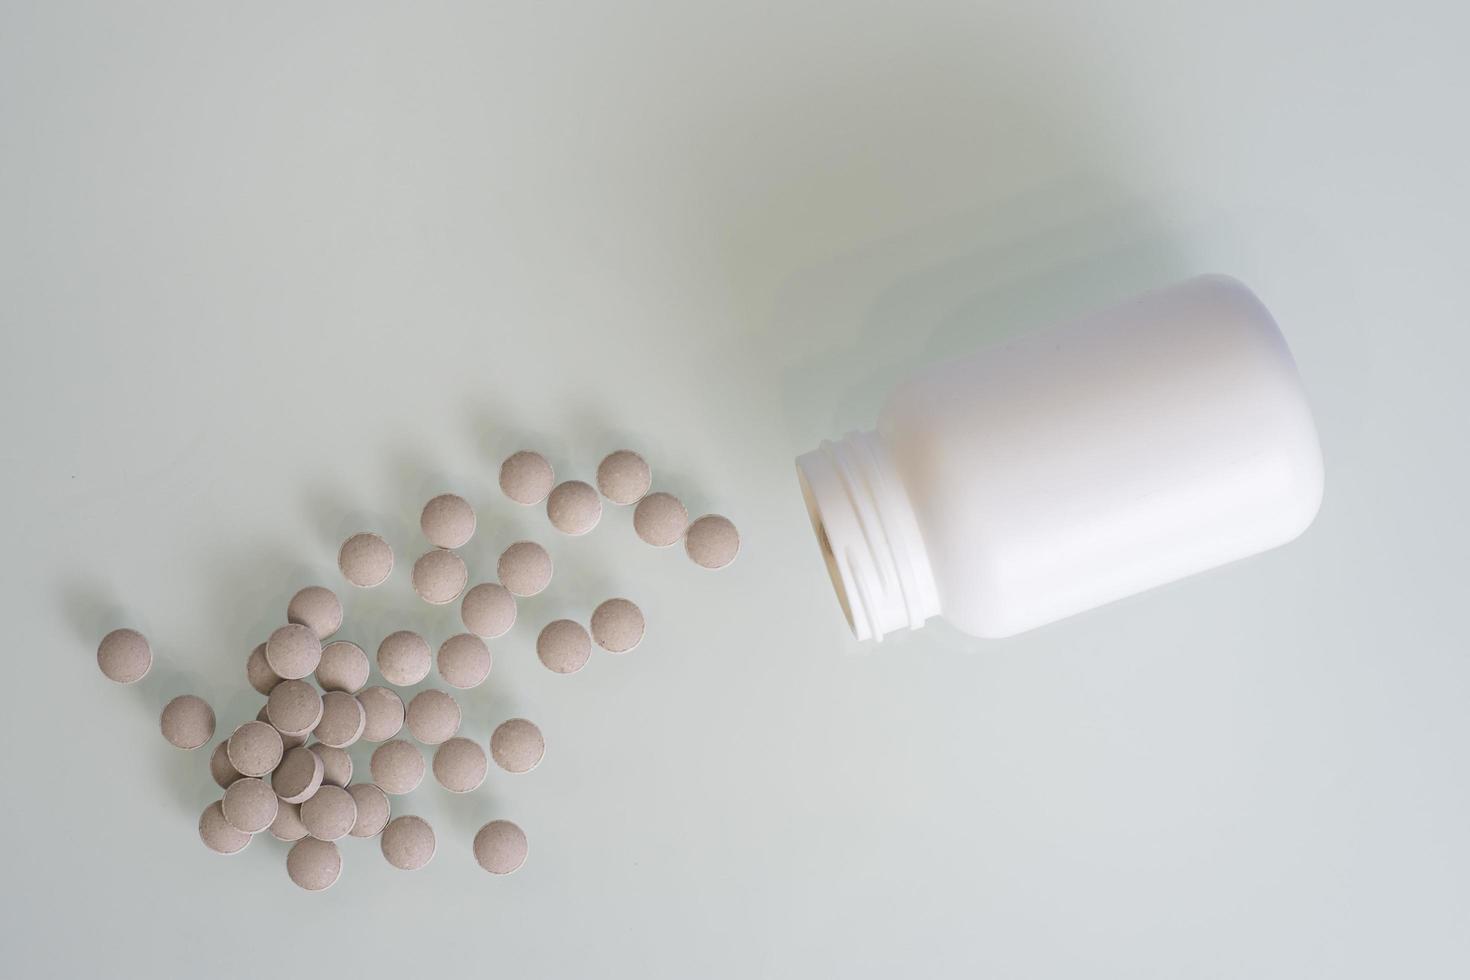 las pastillas están esparcidas sobre la mesa tratamiento o suicidio foto